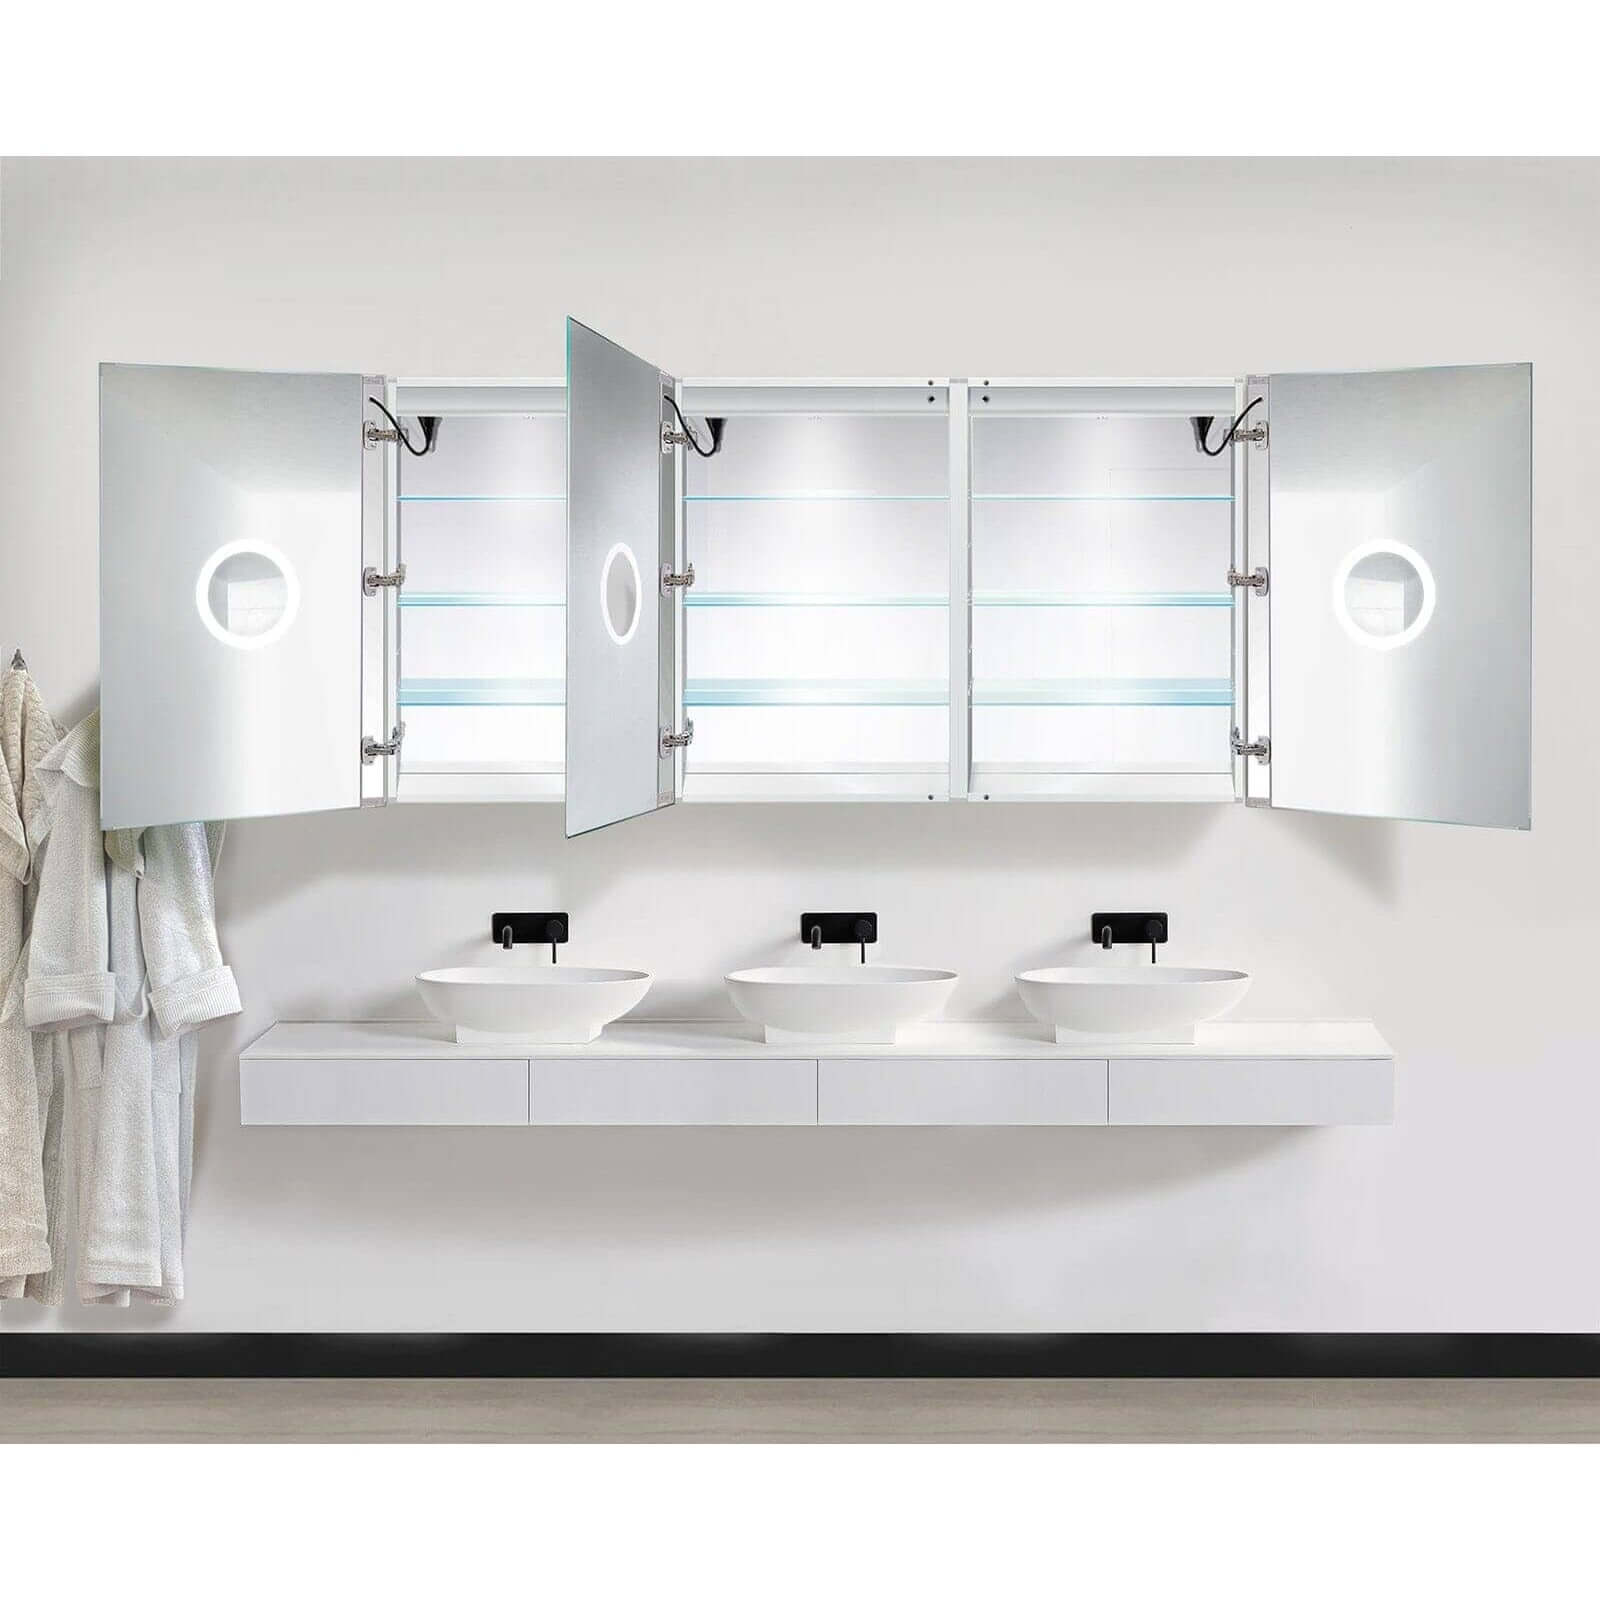 LED Medicine Cabinet - Krugg Tri-View - SVANGE7236TLLR